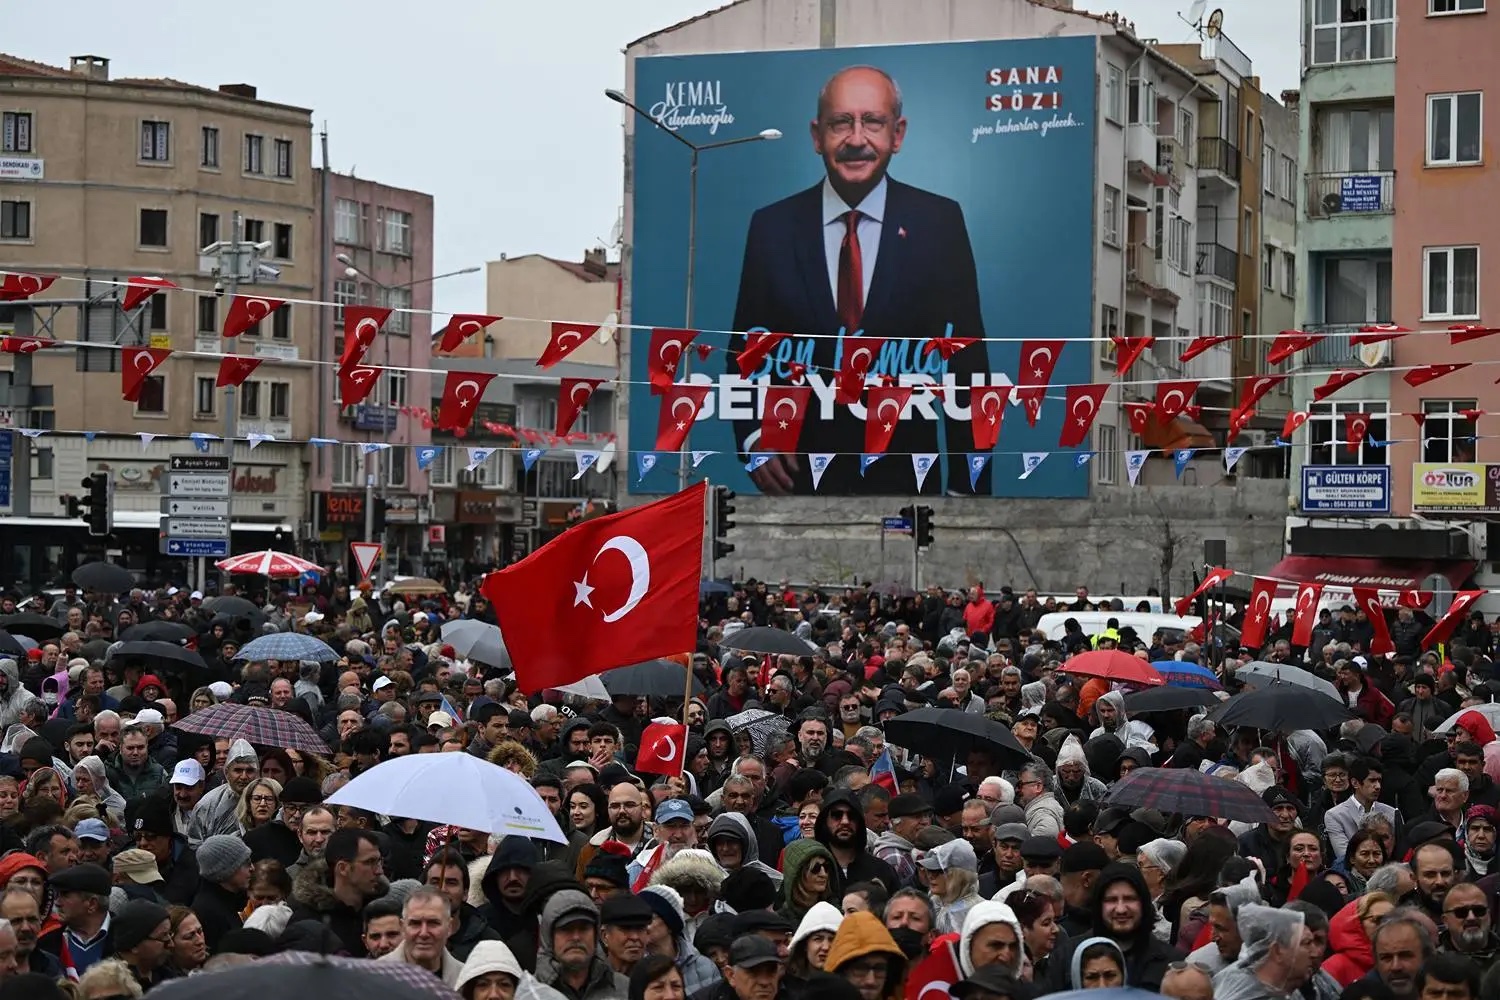 土耳其大选在即,反对派有望推翻现政府 